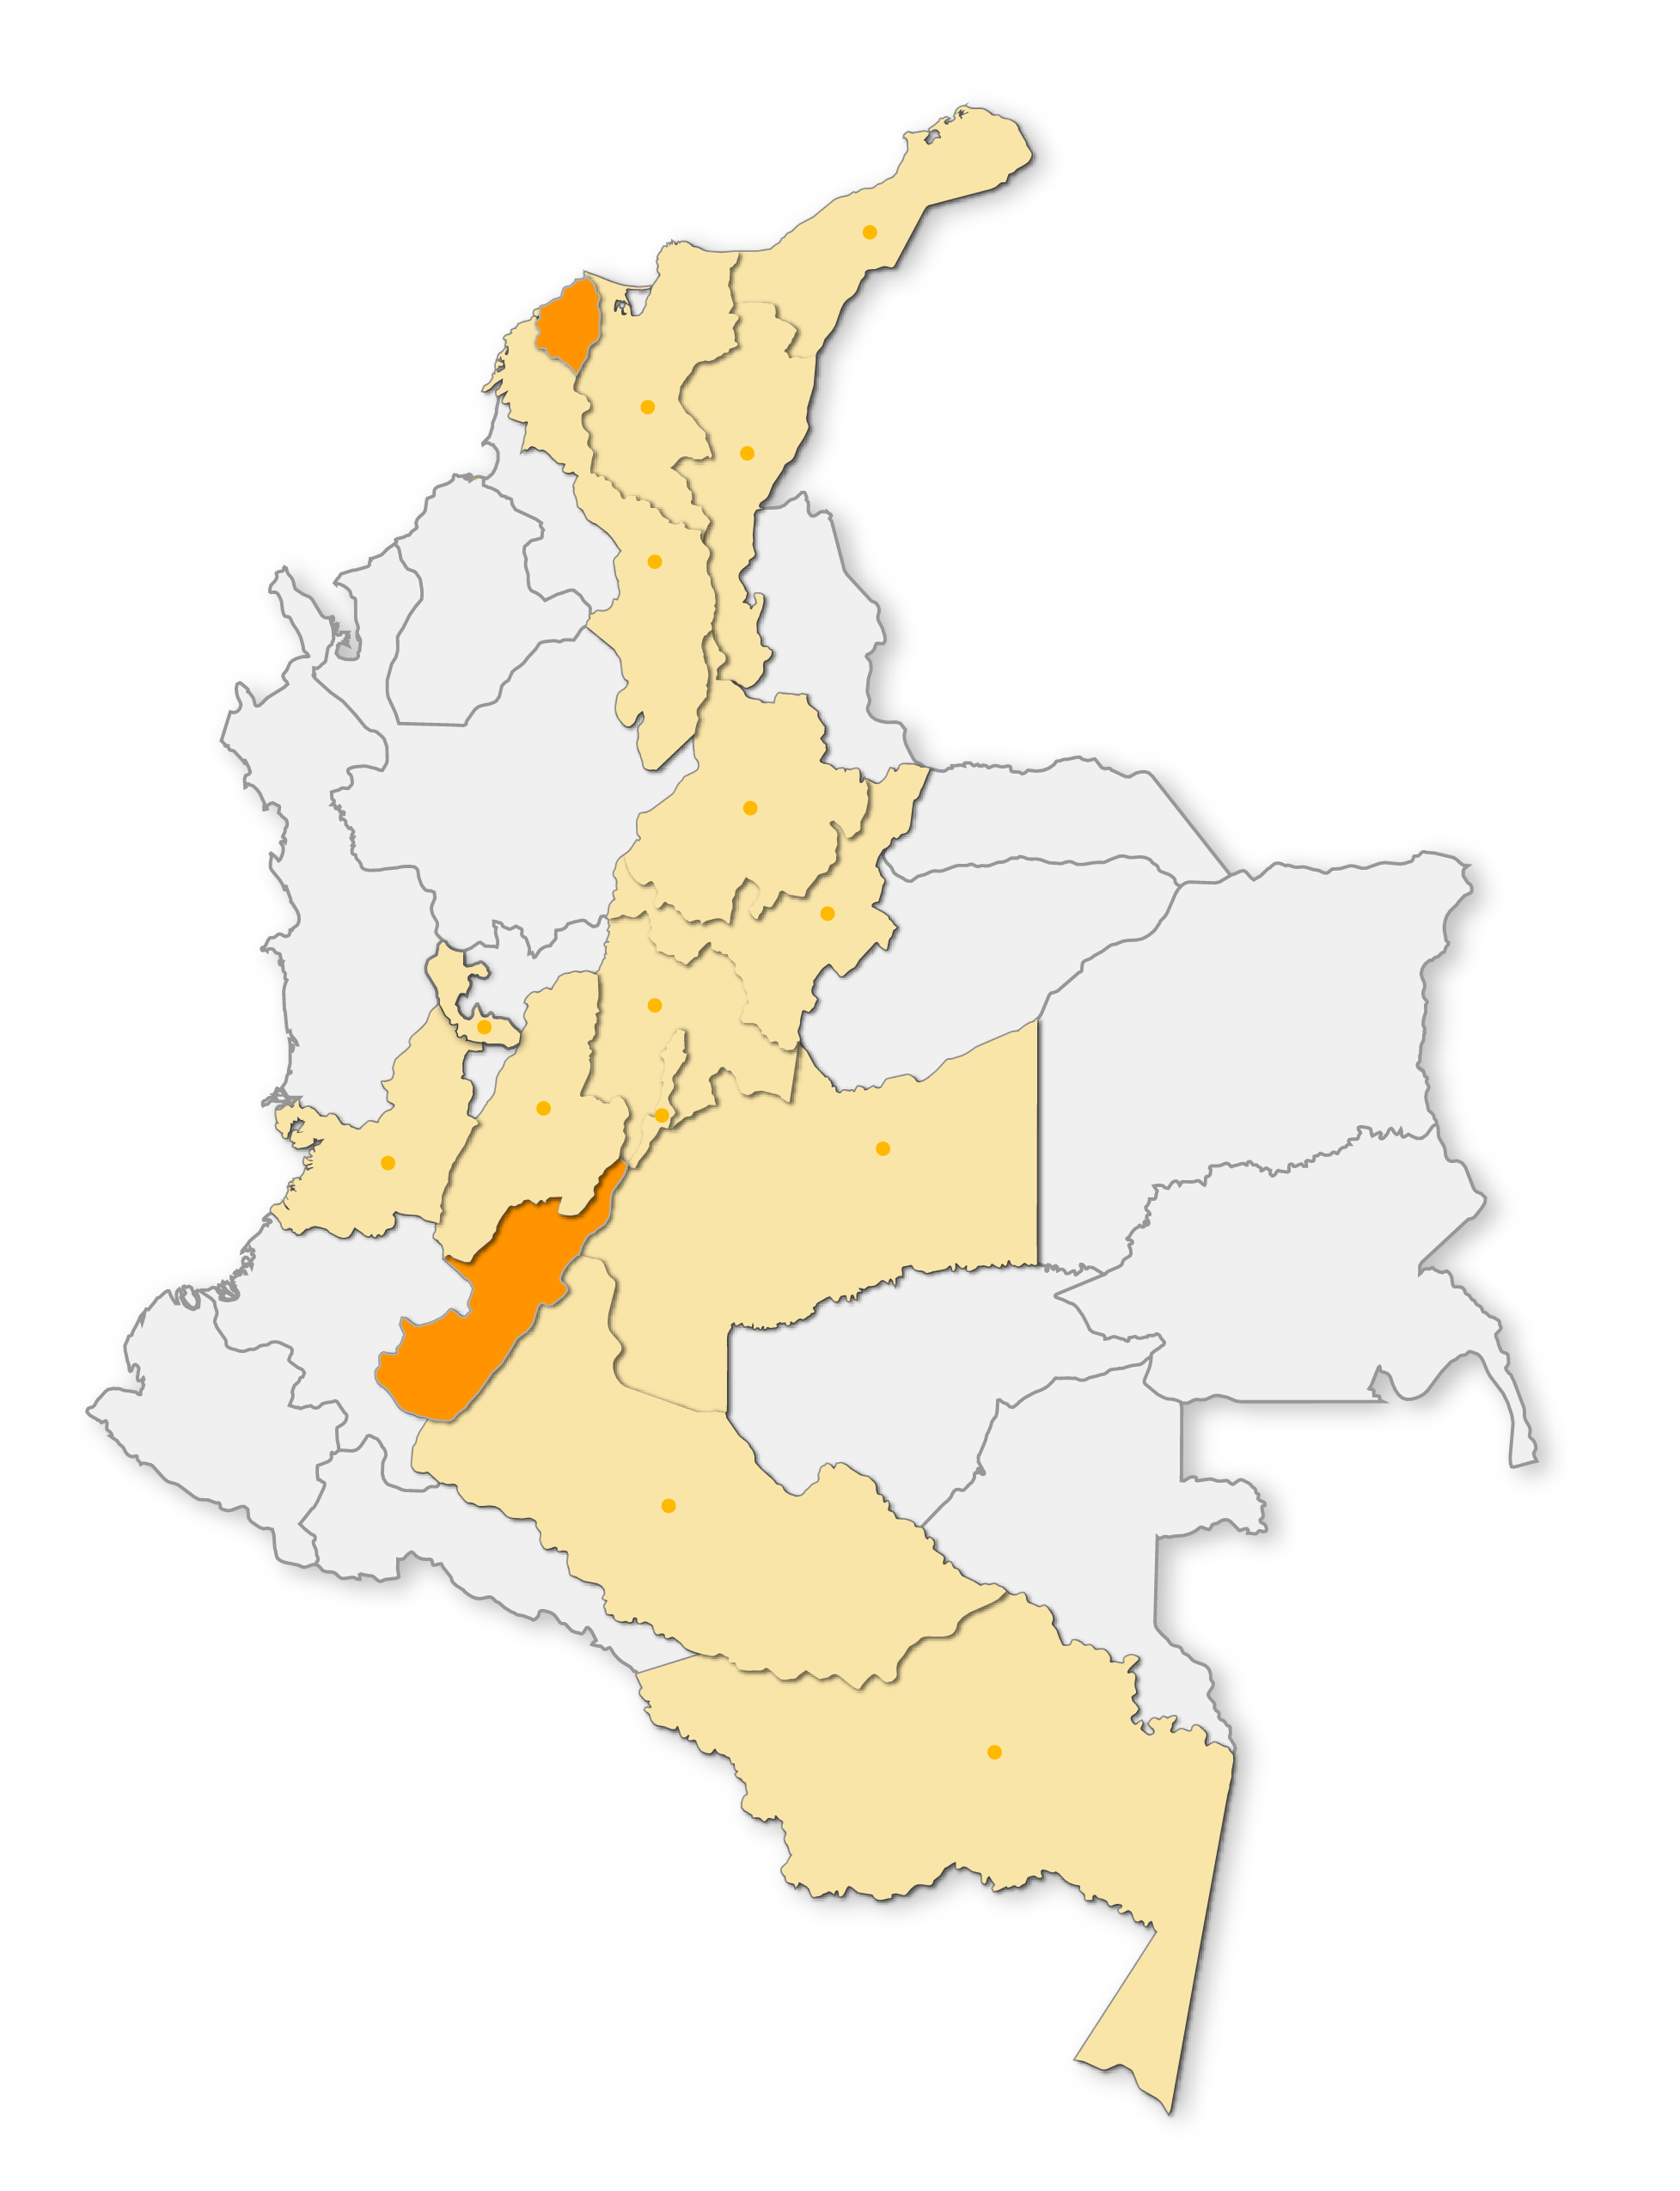 Imagen del mapa de Colombia señalando nuestras sedes en Neiva y Barranquilla